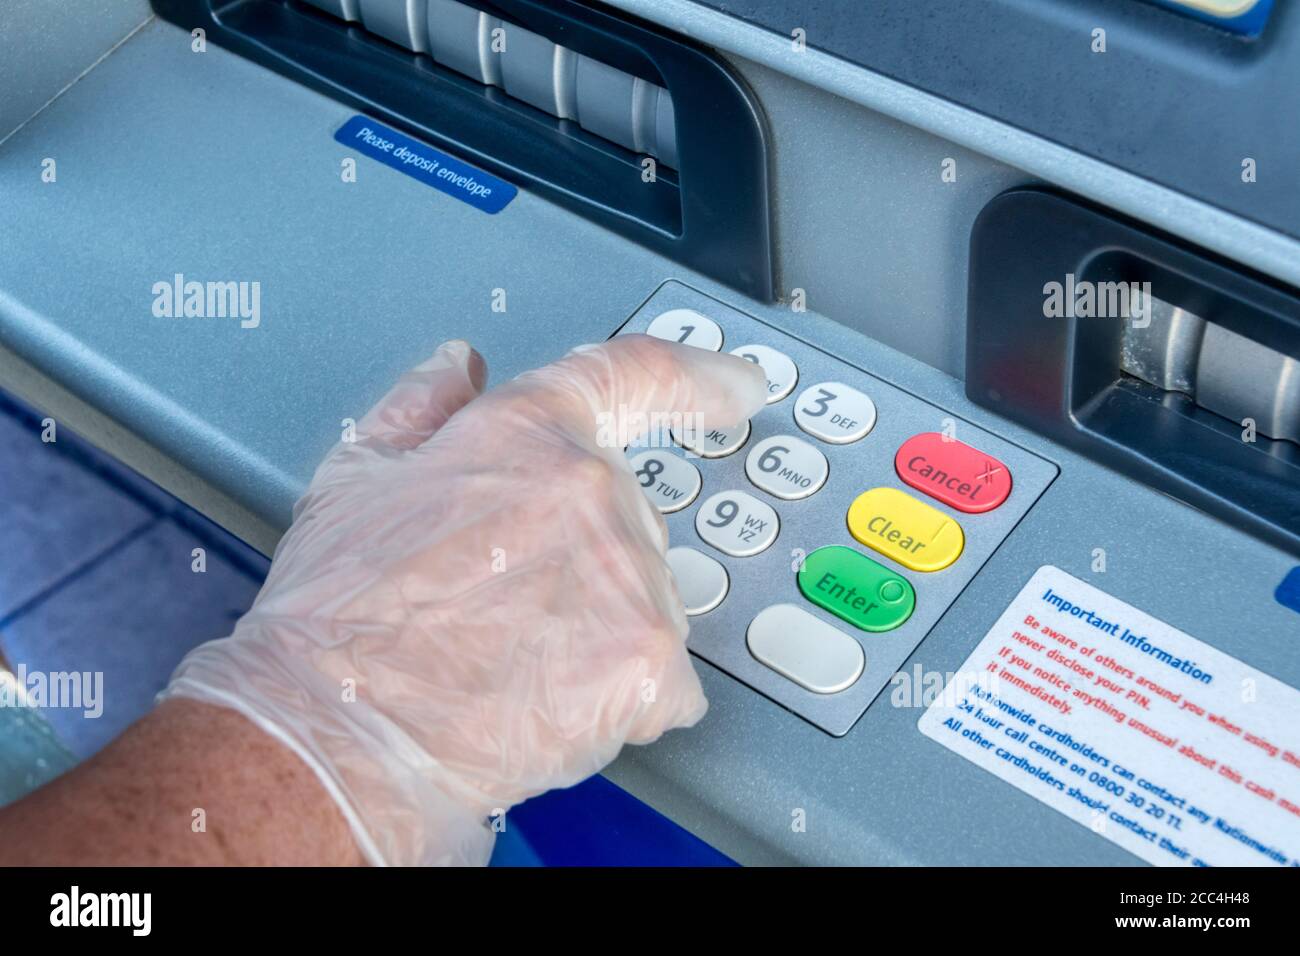 Femme portant des gants de protection en plastique pour faire fonctionner la machine à billets pendant la pandémie de coronavirus COVID-19 en 2020. Banque D'Images